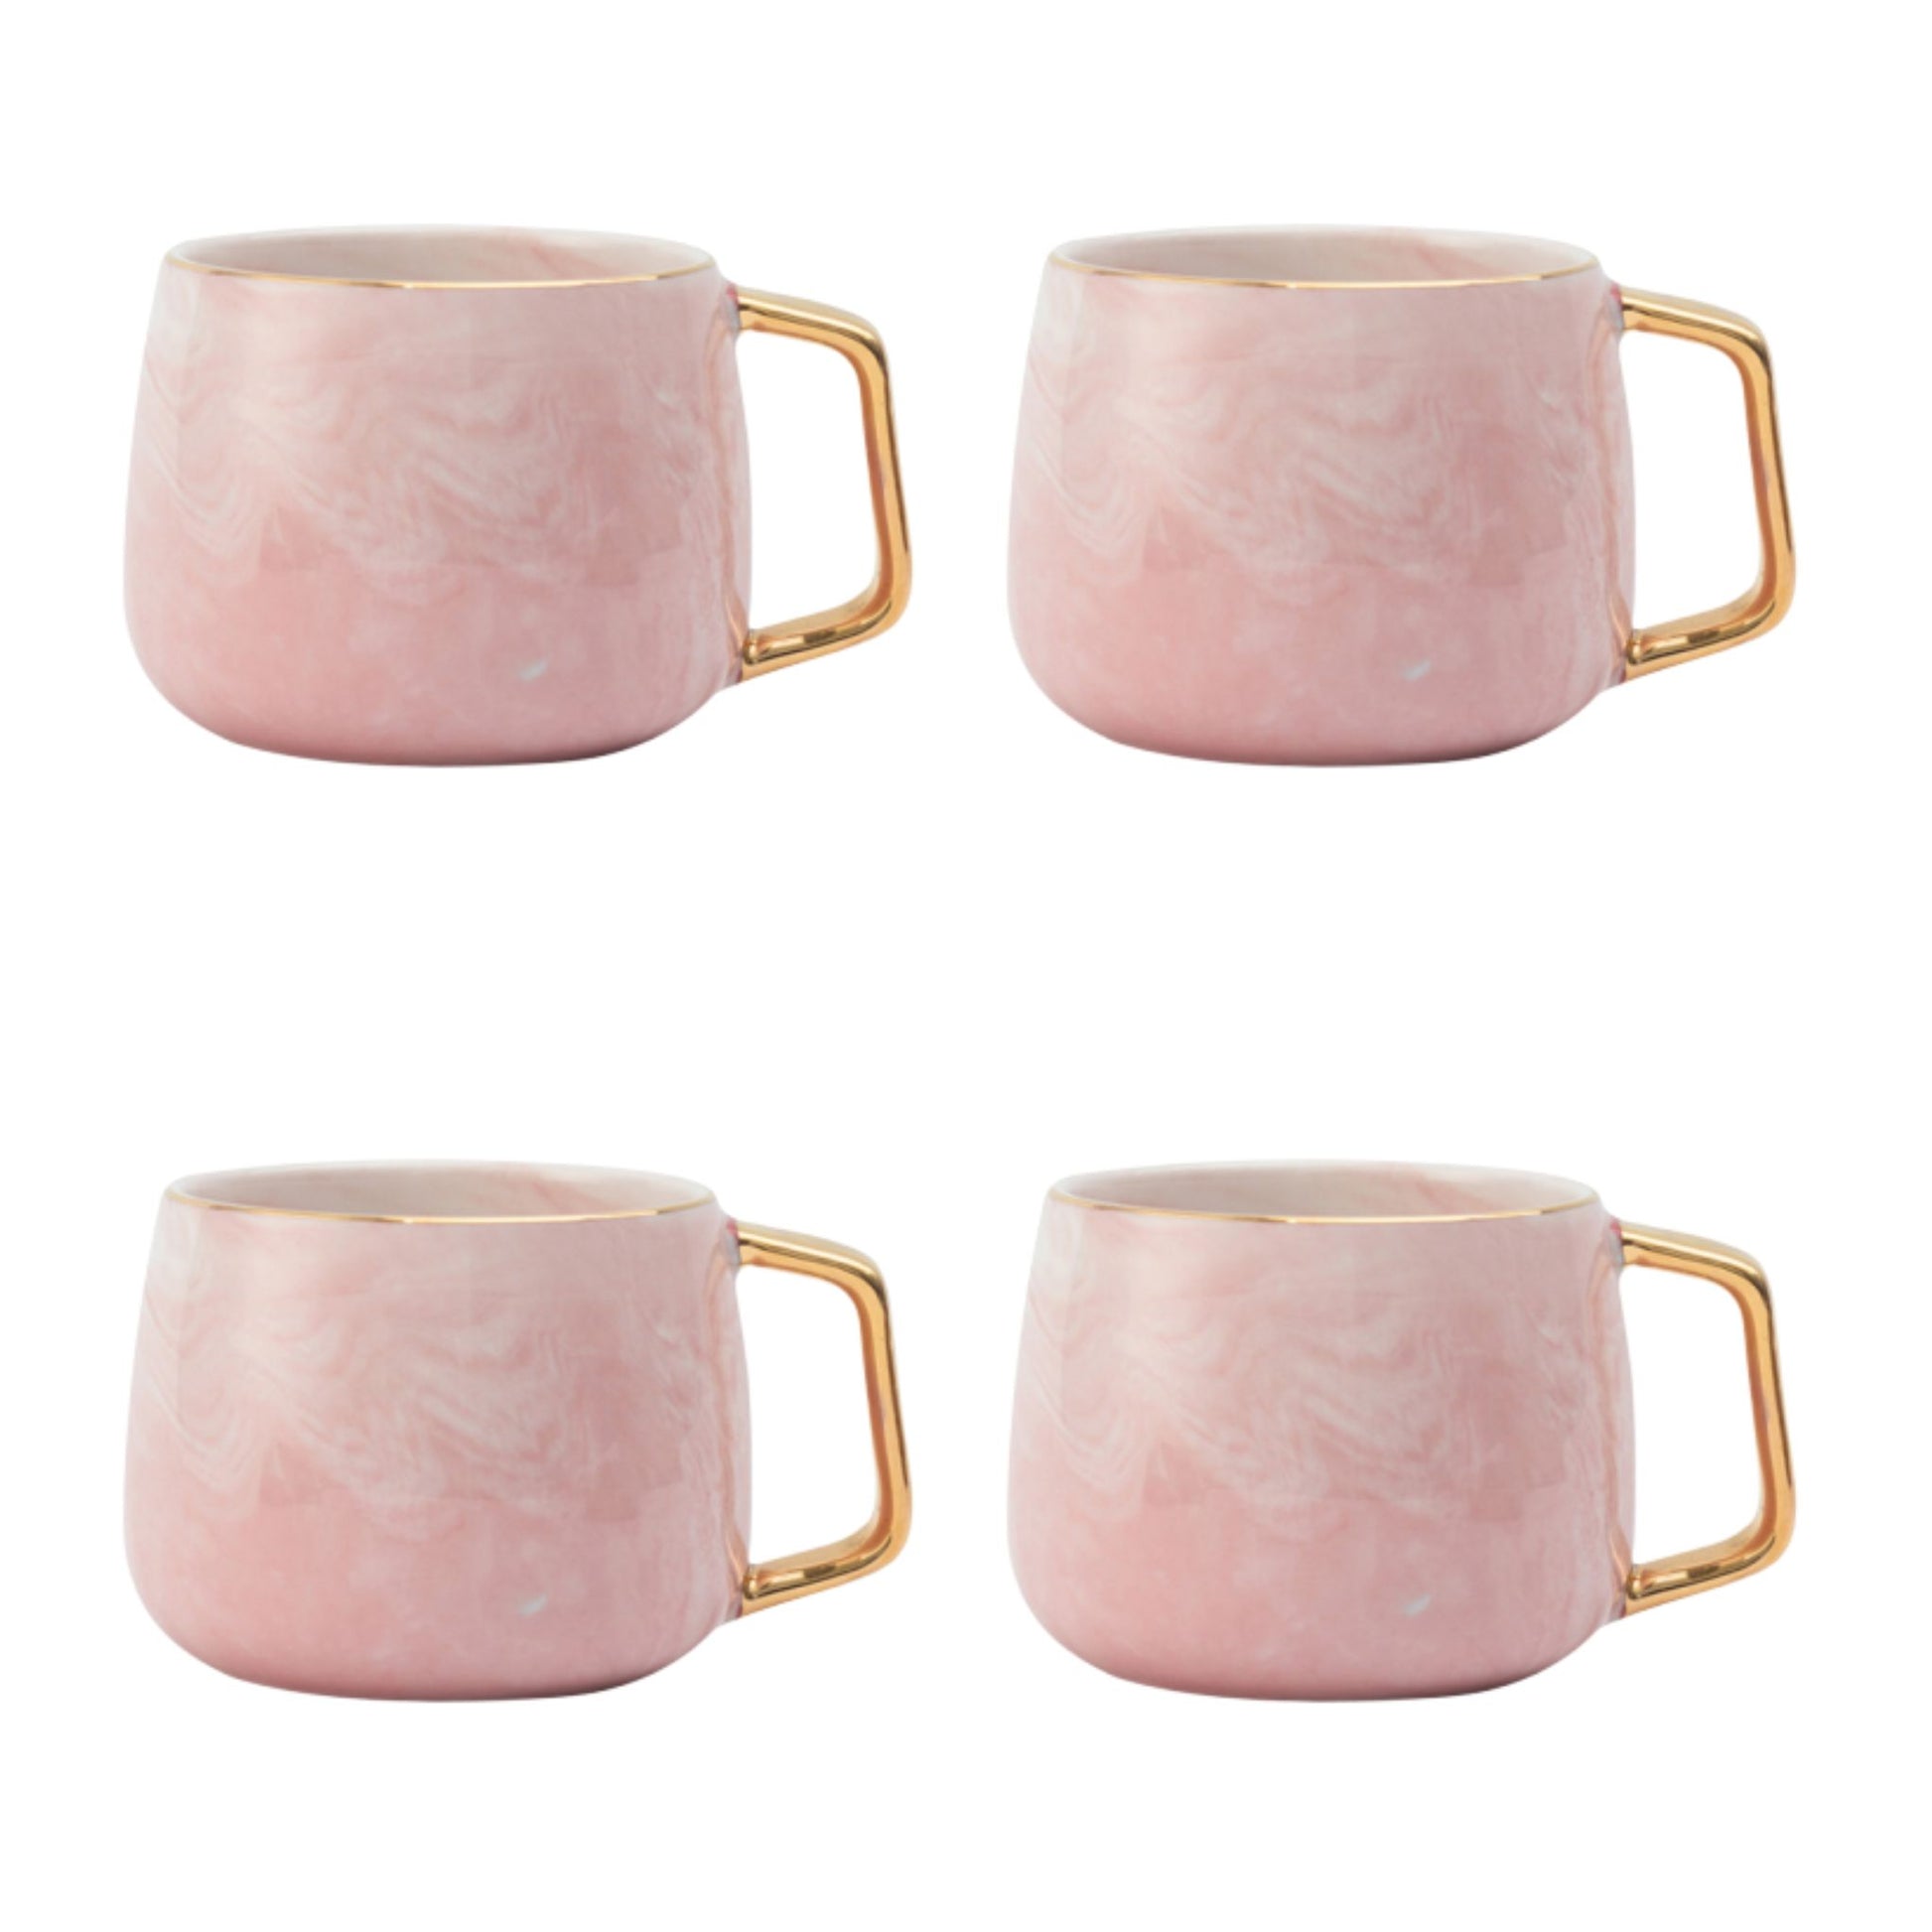 Rosa Marmor Tasse Eckiger Goldhenkel Schöne Tassen zum Verschenken Luxus Tassen Set Schönes Marmor Geschirr Luxus Geschirr mit Gold 4er Set